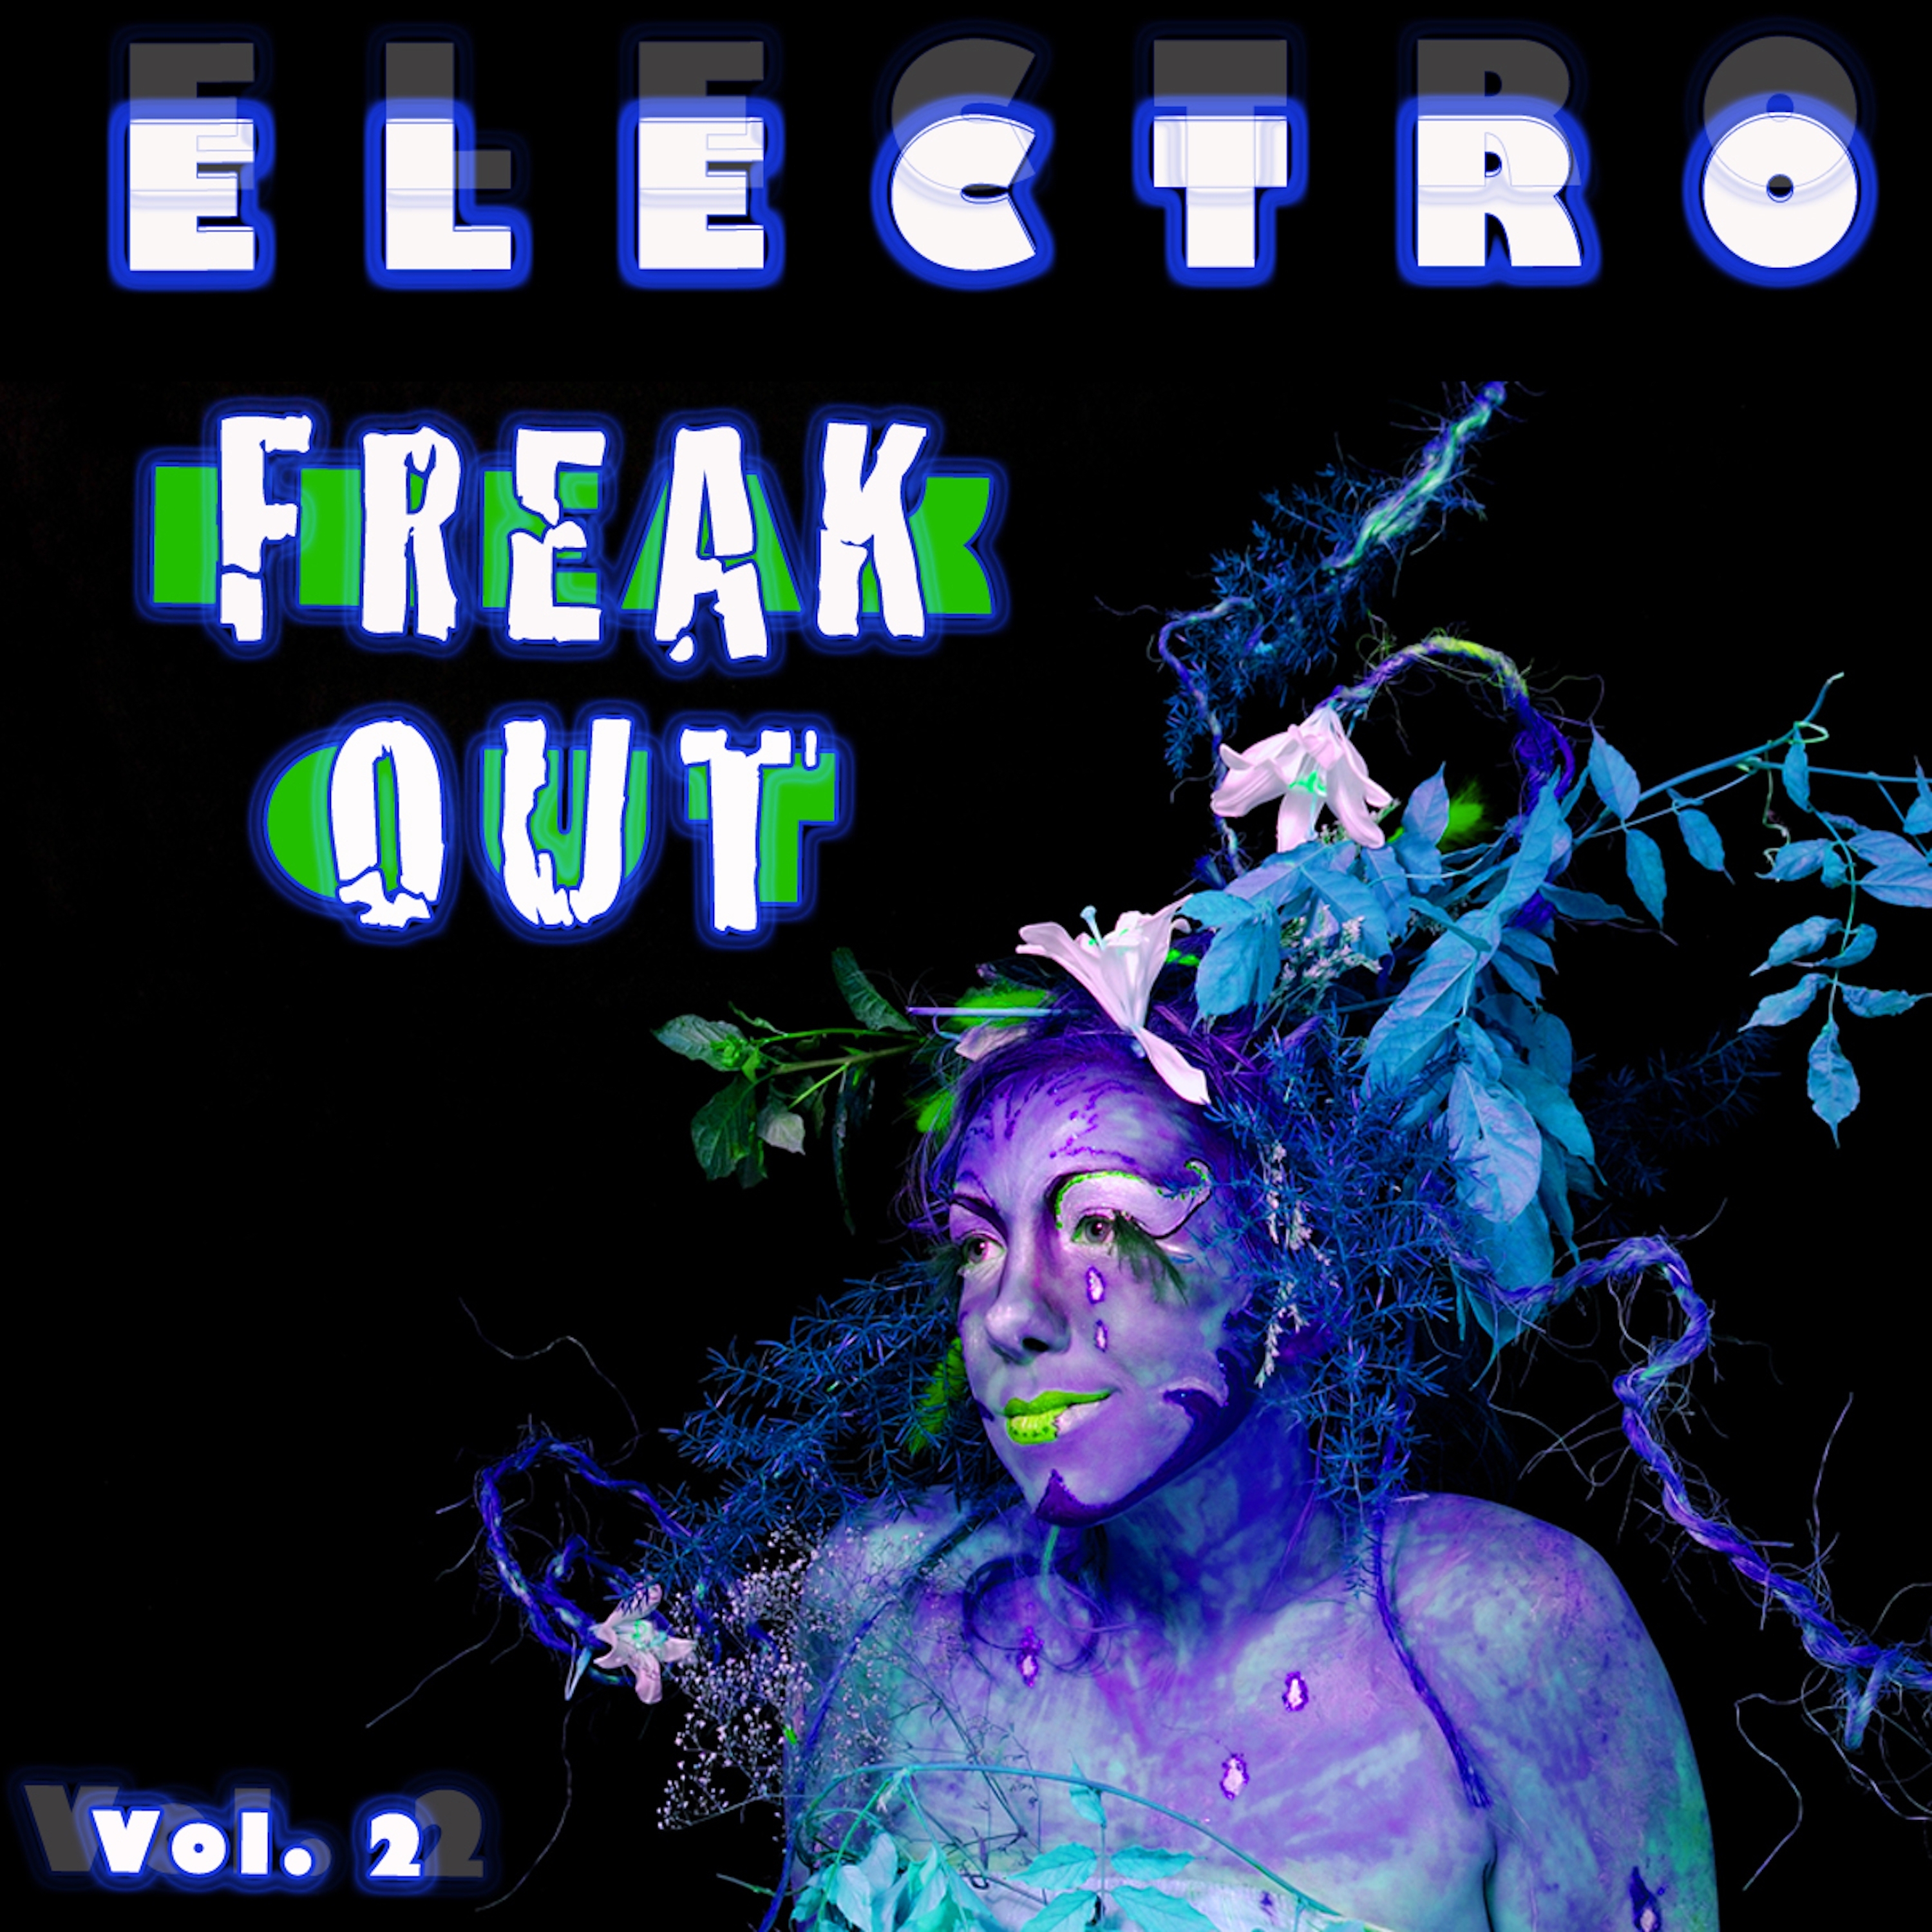 Electro Freak Out Vol. 2